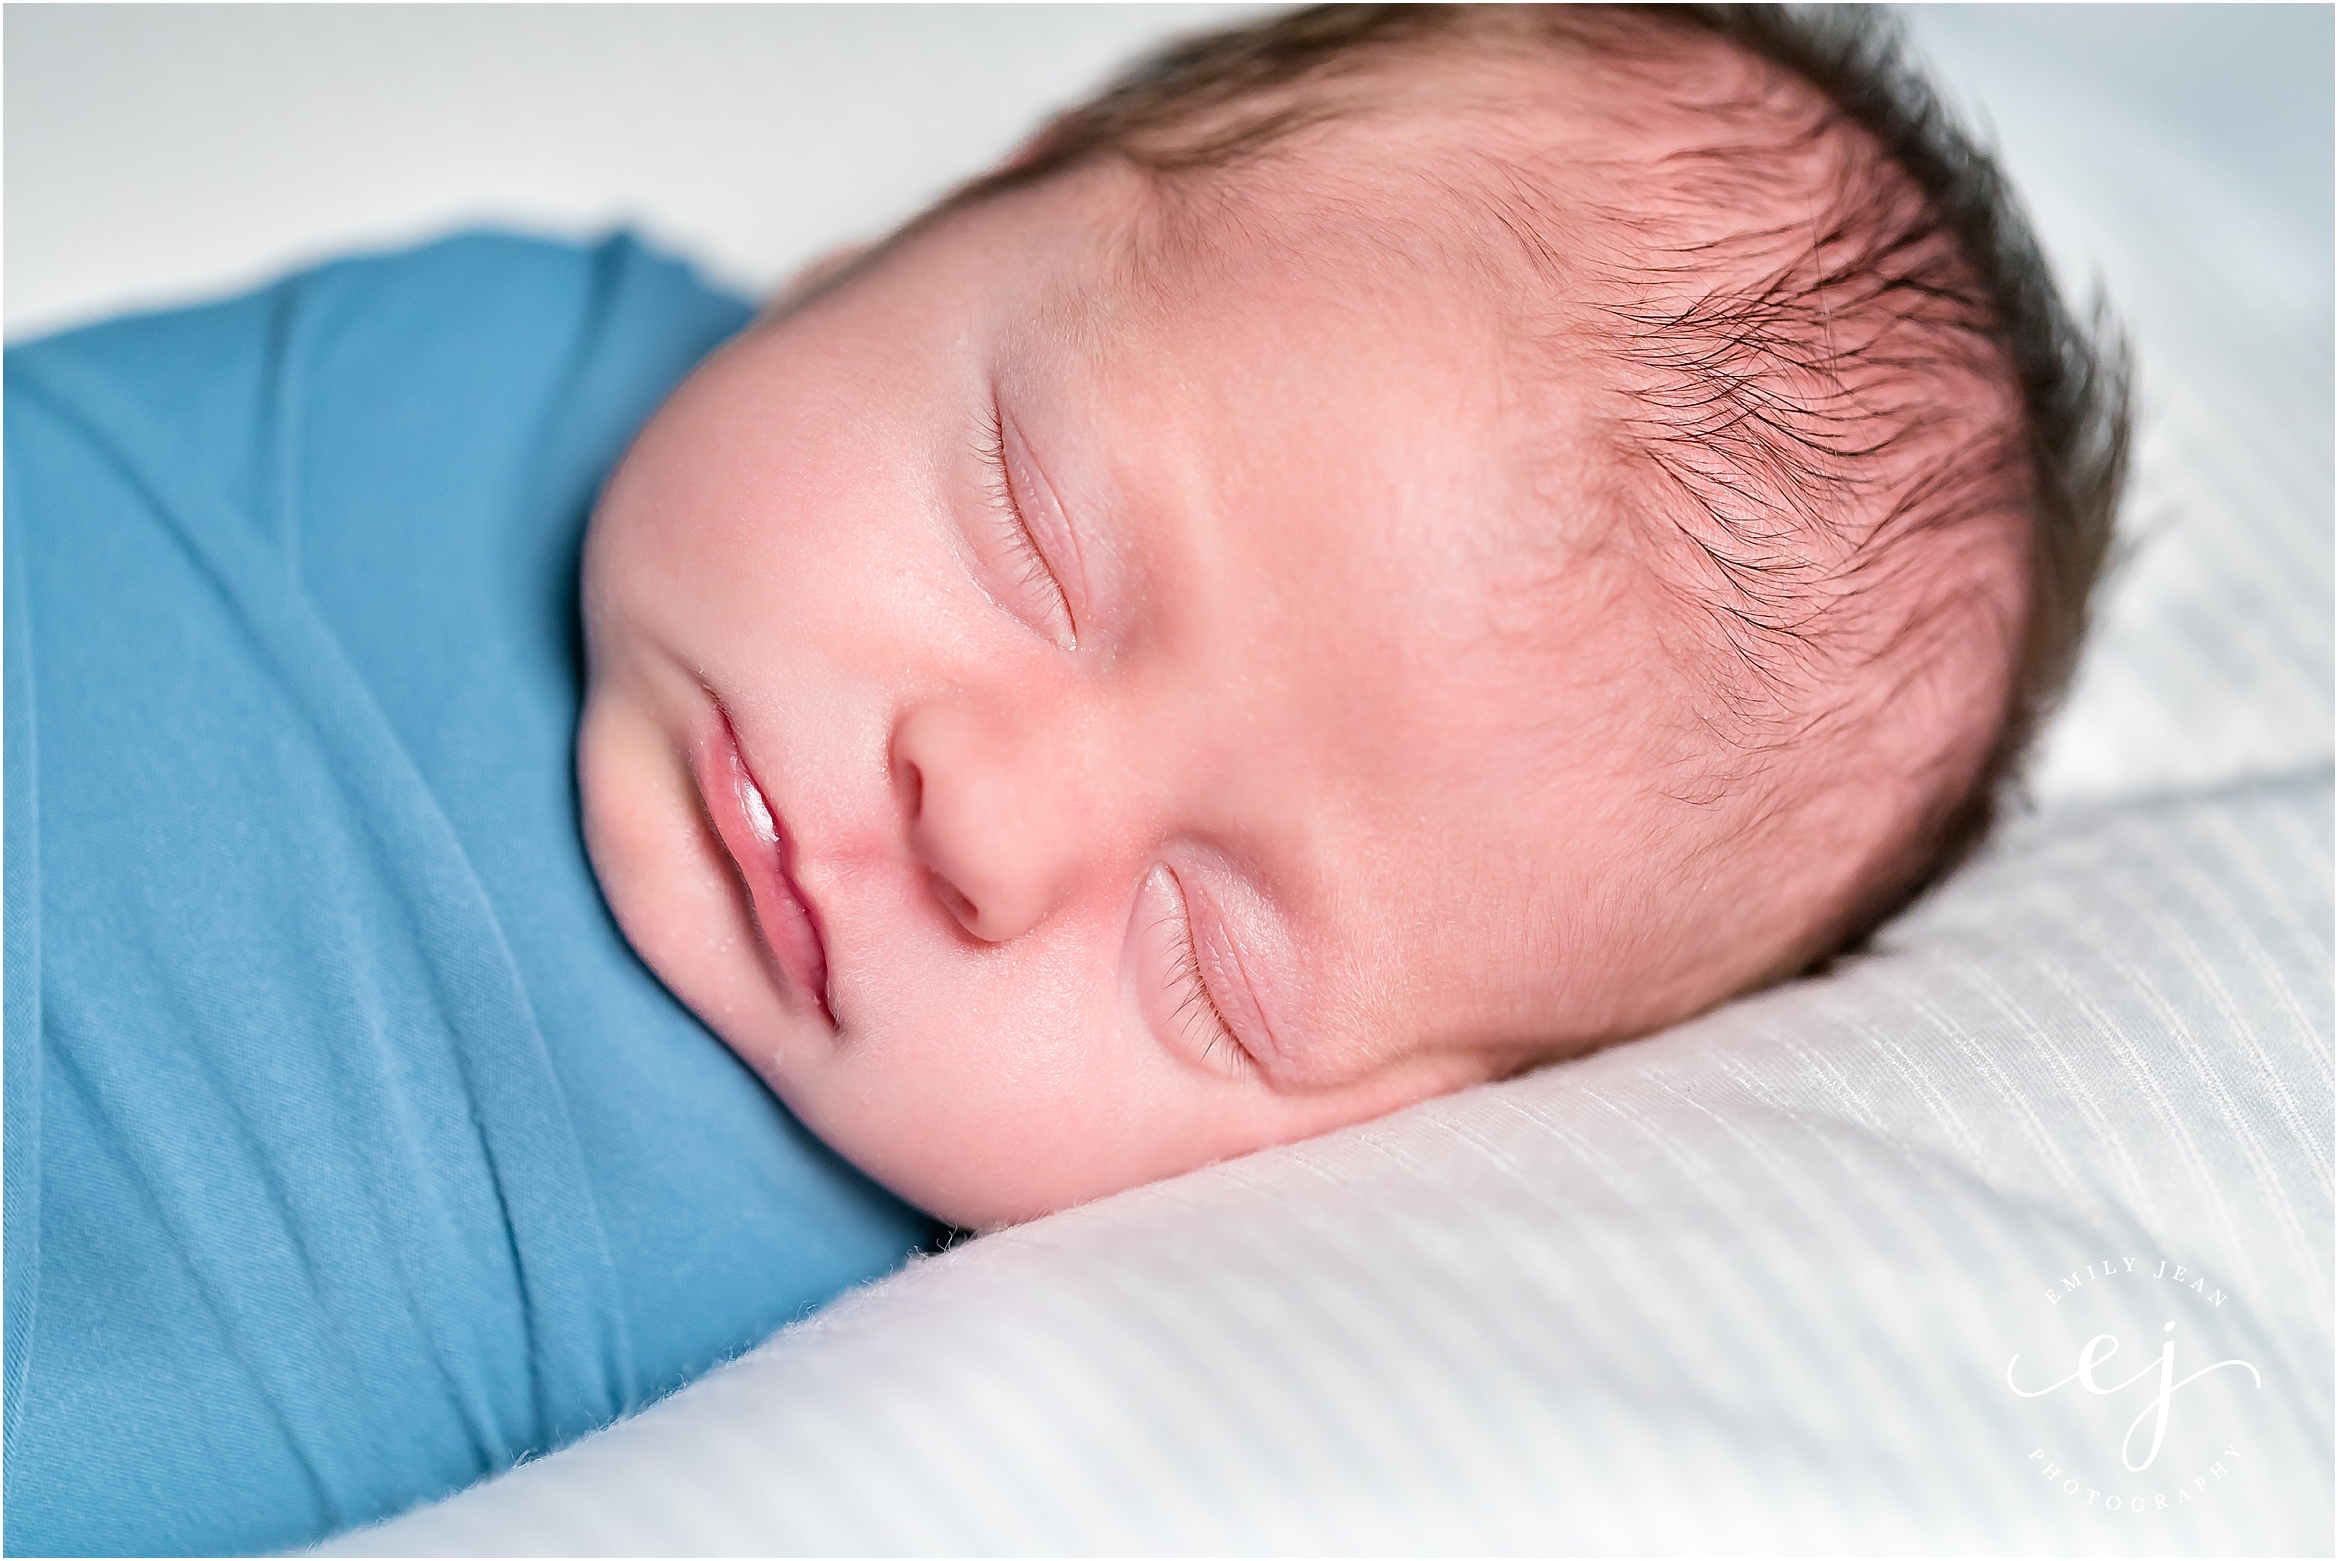 la crosse wisconsin family photo newborn baby boy swaddled in blue